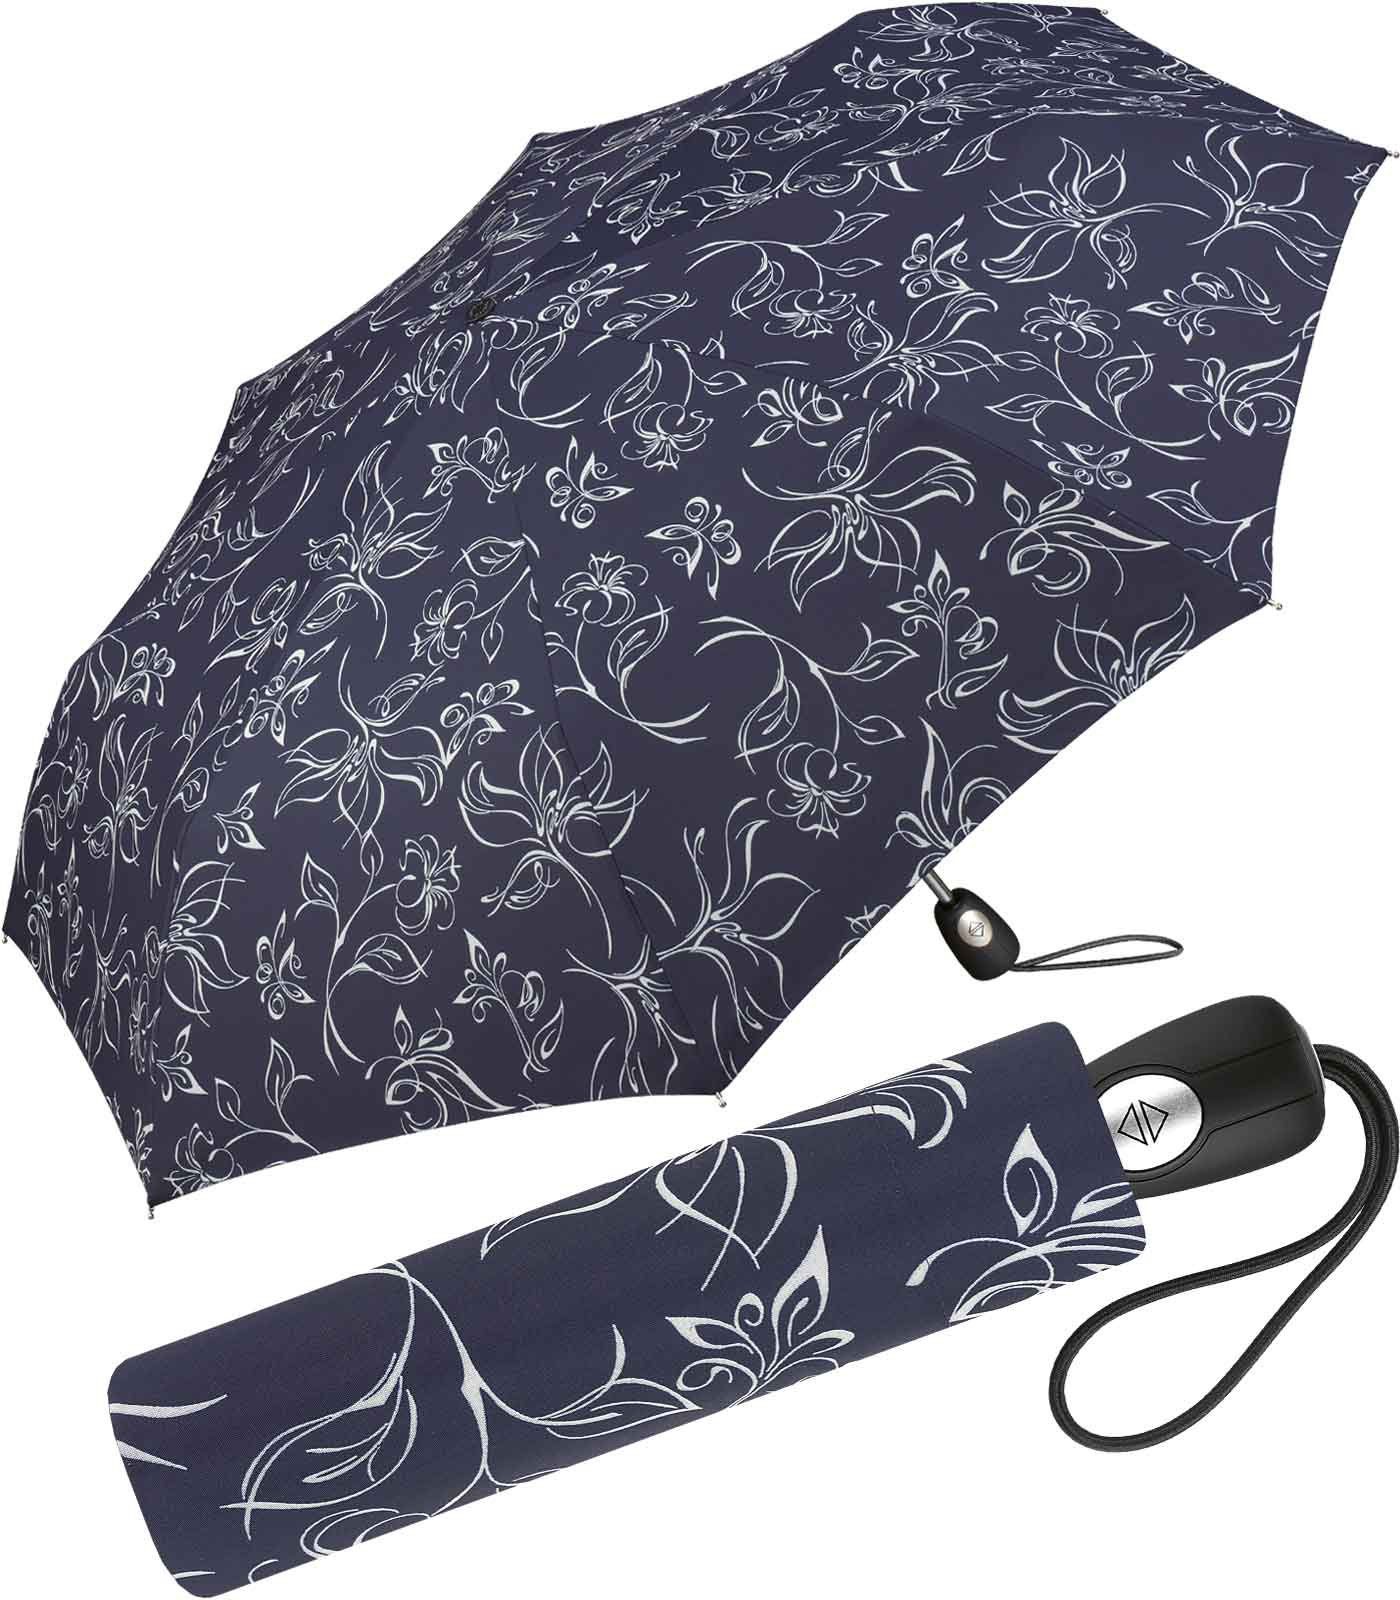 Taschenregenschirm wunderschönen Auf-Zu-Automatik, mit Damen-Regenschirm Pierre schöner weiß-dunkelblau Cardin mit Blumenskizzen